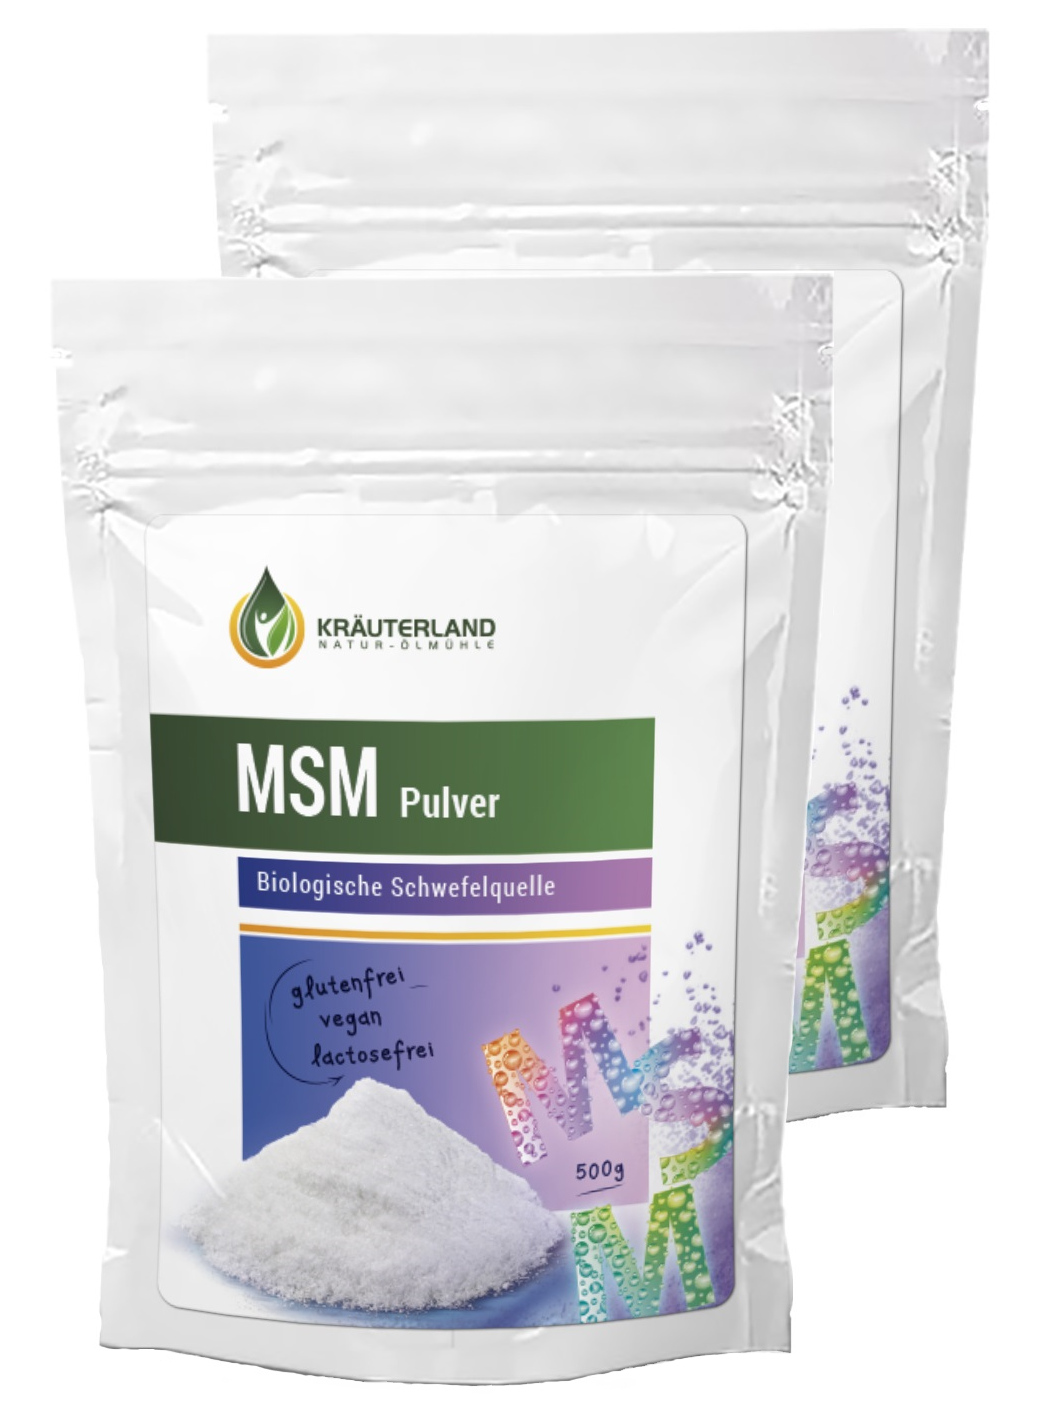 MSM in Premium Qualität direkt vom Hersteller